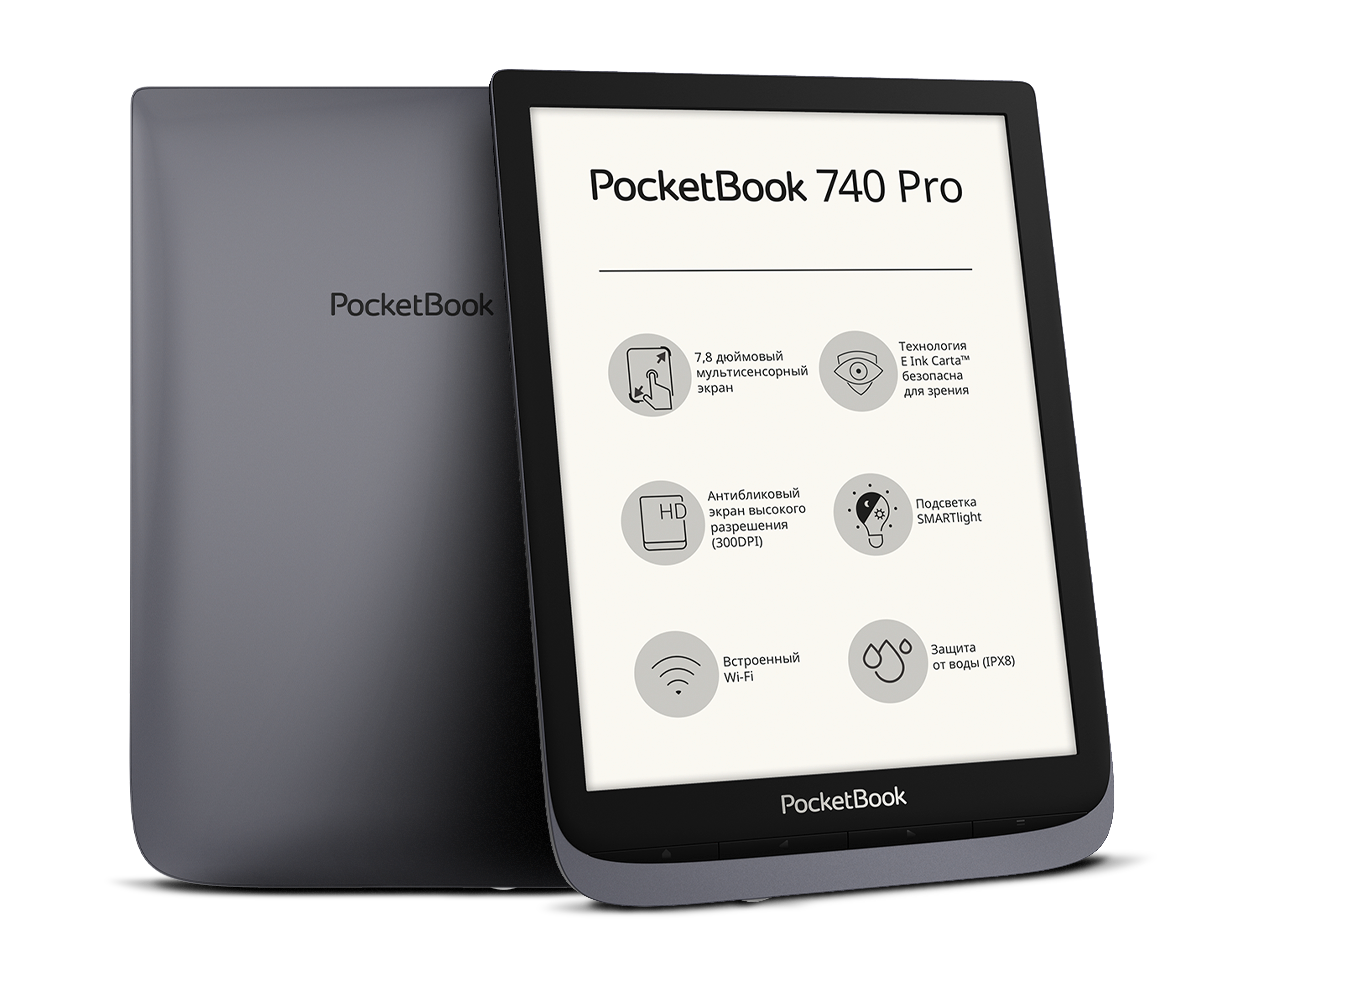 POCKETBOOK 740 Pro. POCKETBOOK Inkpad 3 Pro. POCKETBOOK 740 Pro / Inkpad 3 Pro. POCKETBOOK 740 Aqua. Pocketbook 3 pro